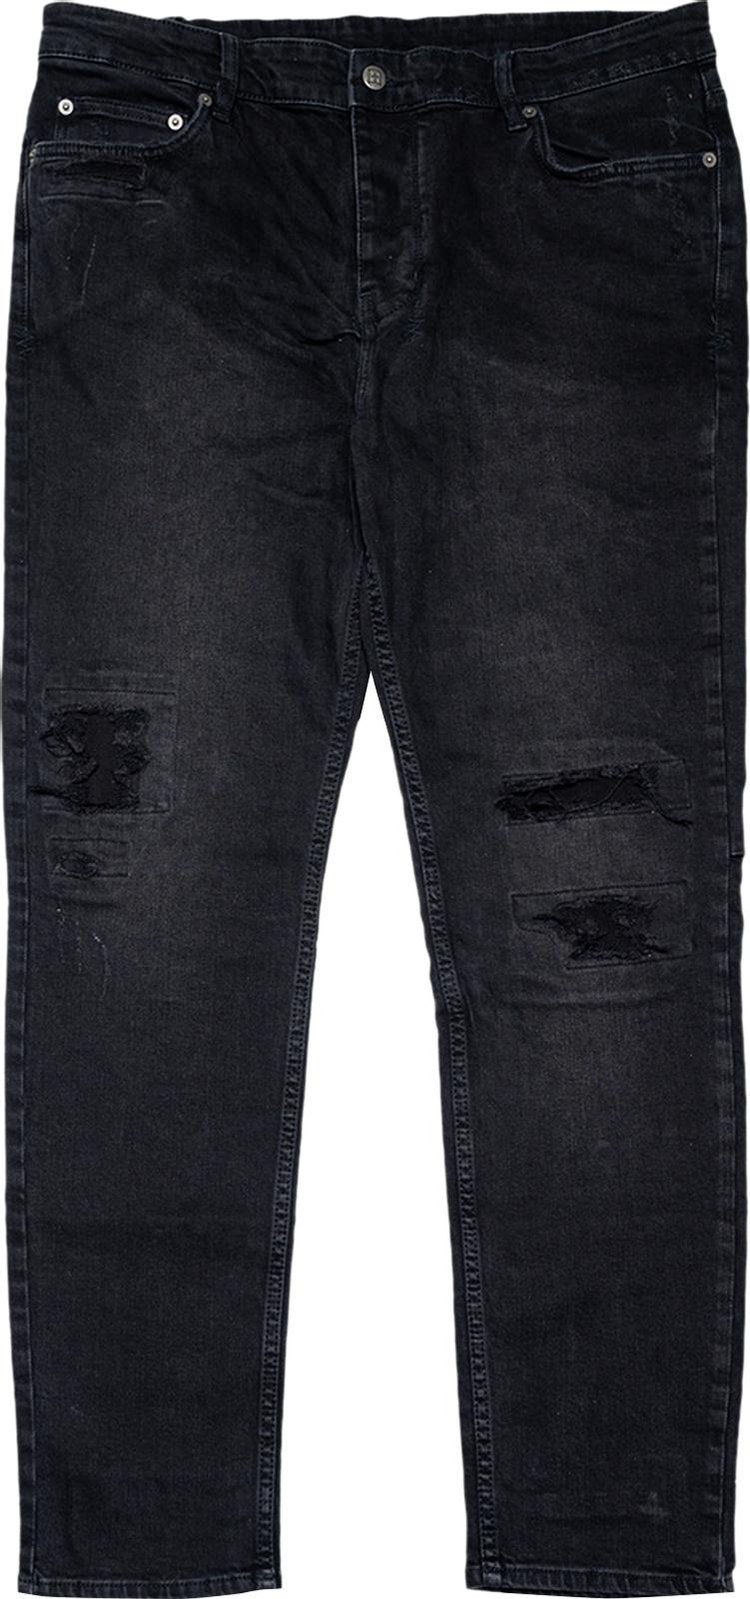 Ksubi Chitch Boneyard Jeans 'Black'